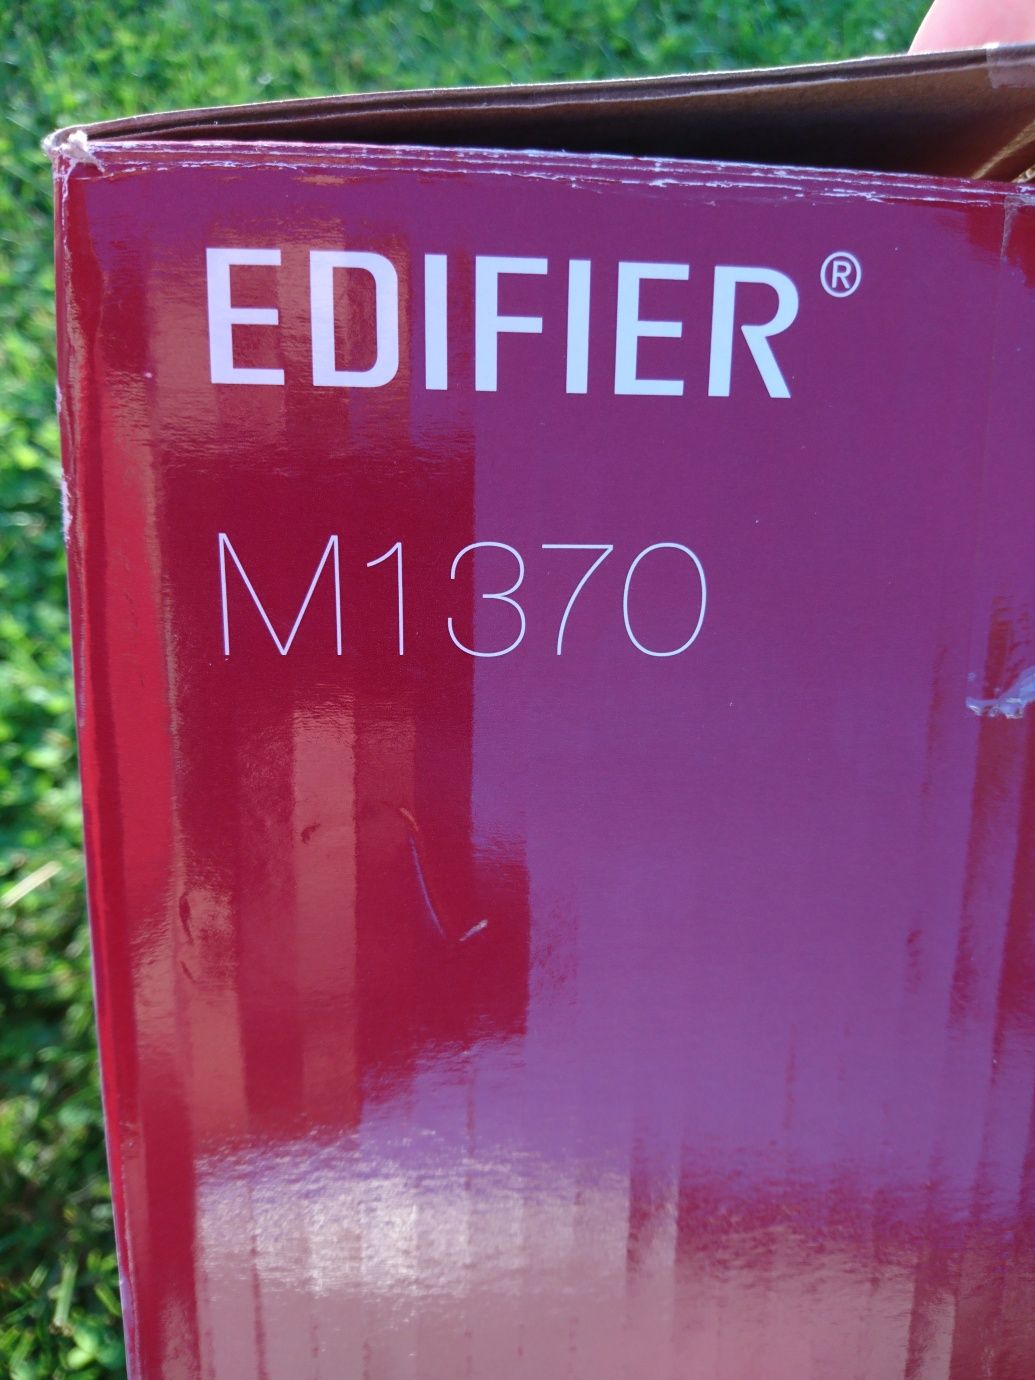 Głośniki Edifier m1370 Subwoofer + 2 głośniki monitory 2+1 2.1